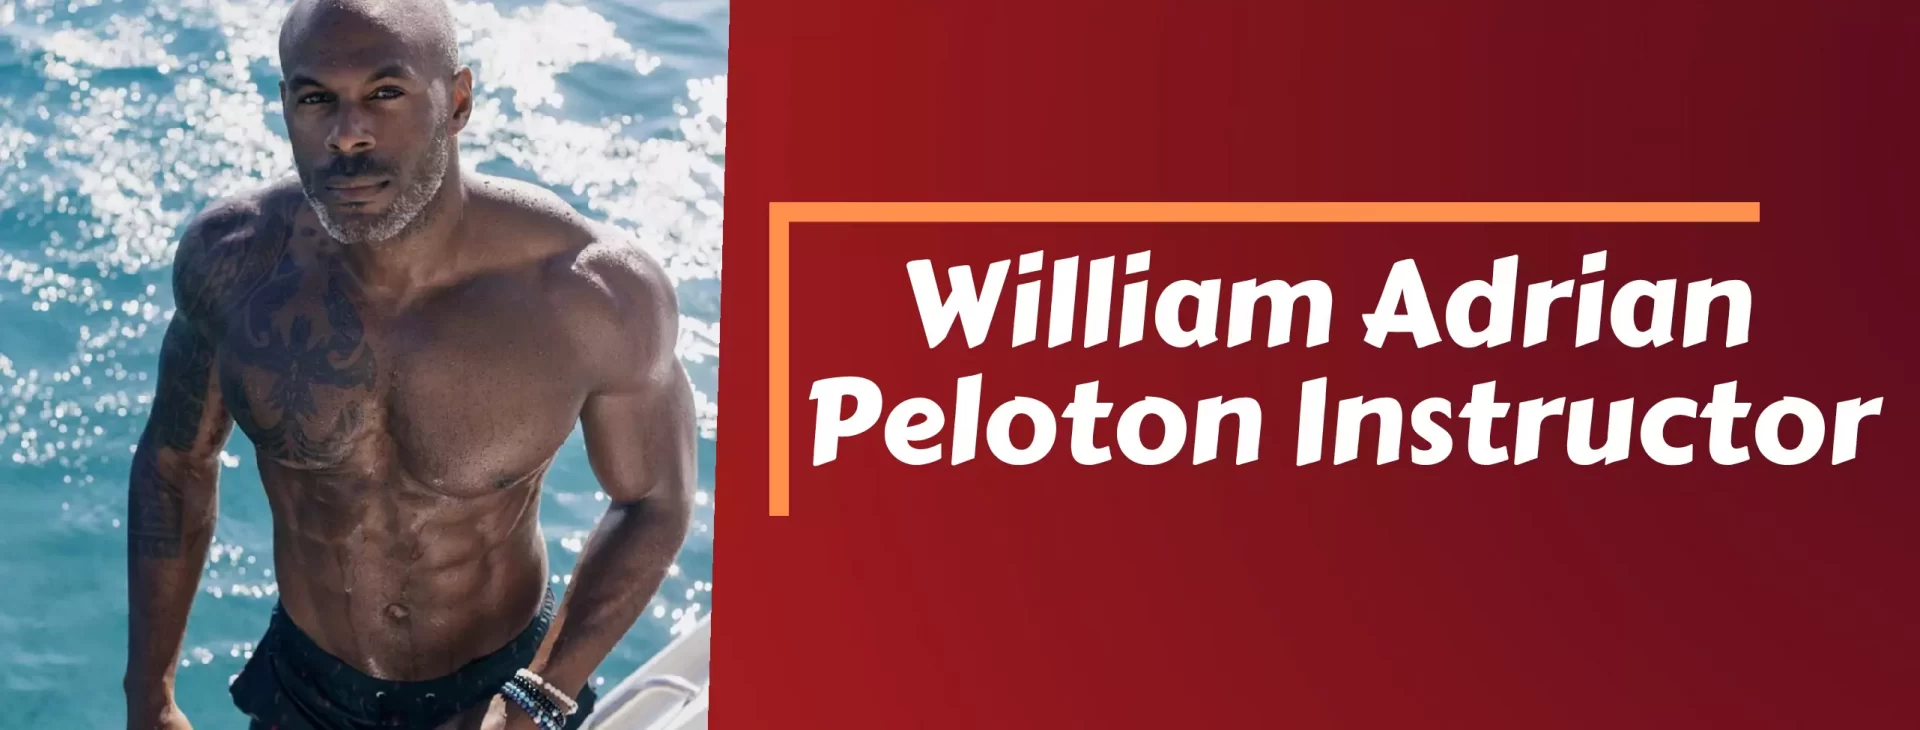 William Adrian Peloton,William Adrian Peloton Instructor